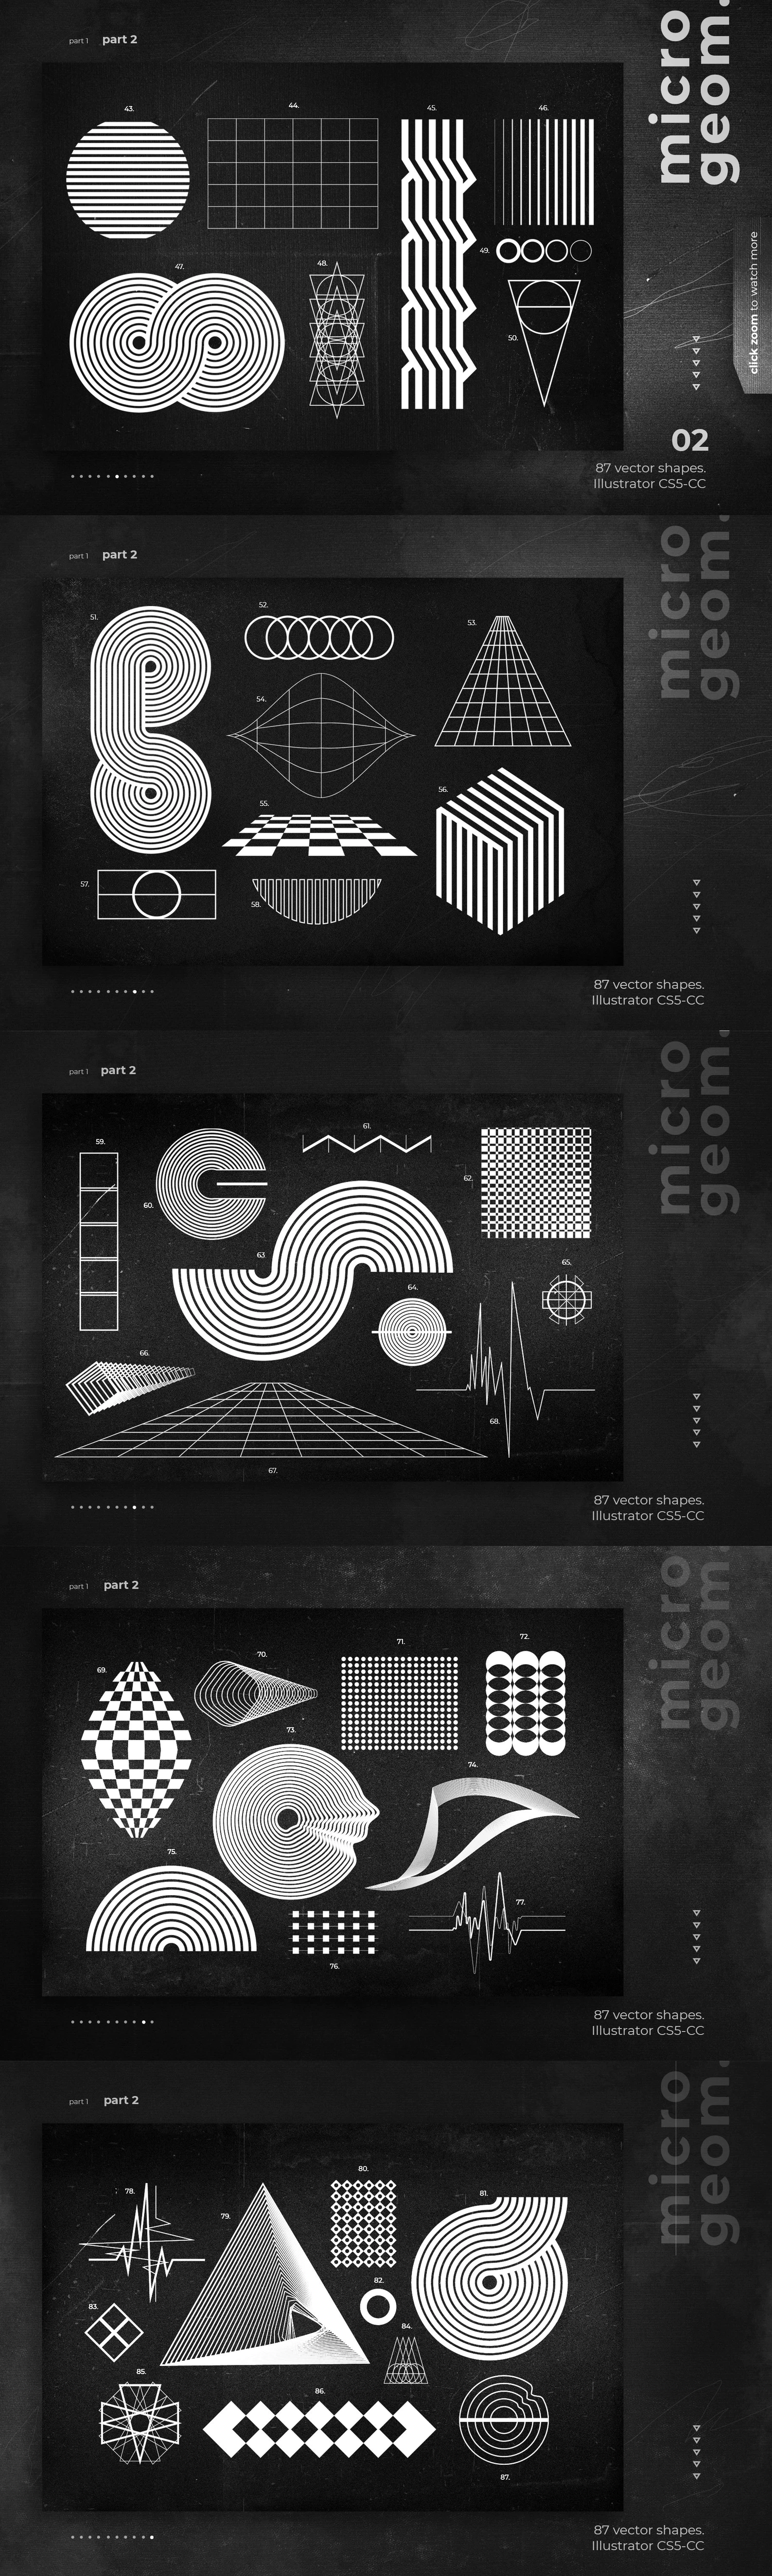 4288 未来抽象潮流科技线条几何海报设计装饰图形矢量素材合集 Shapes Backgrounds Textures@GOOODME.COM